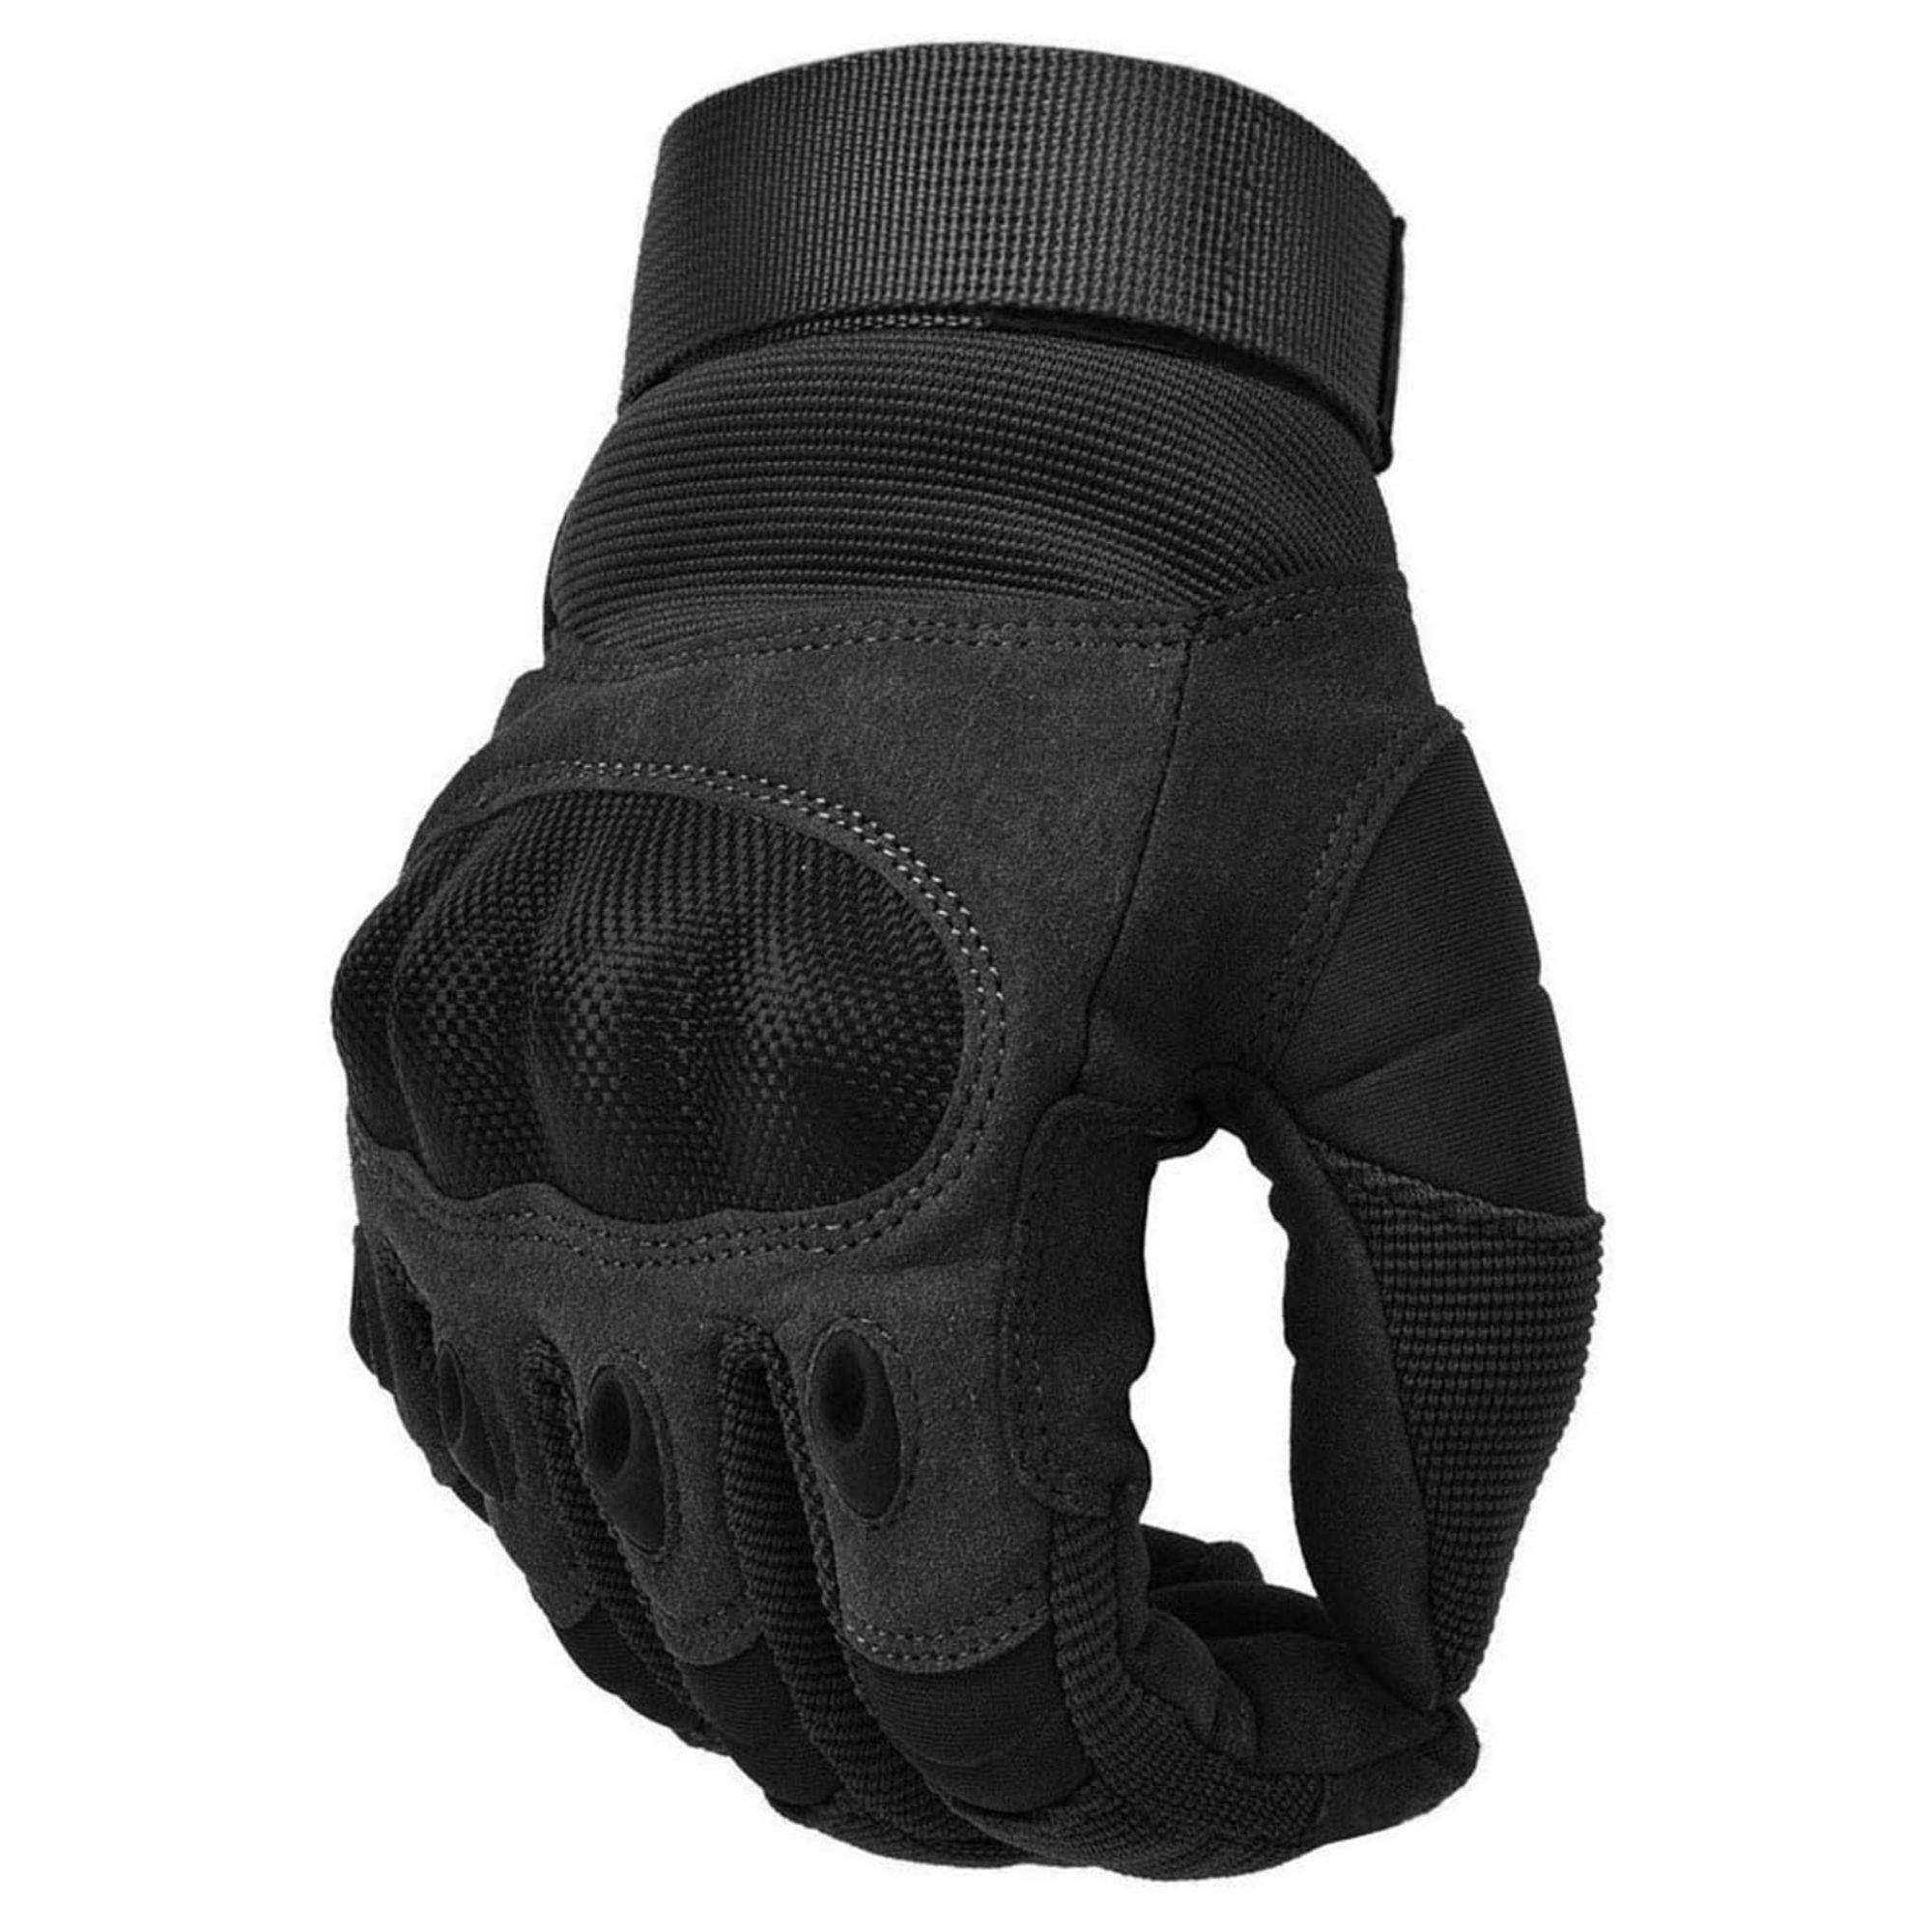 Repetirás la compra de estos guantes de moto por su calidad y su precio: 12,90 € en Amazon